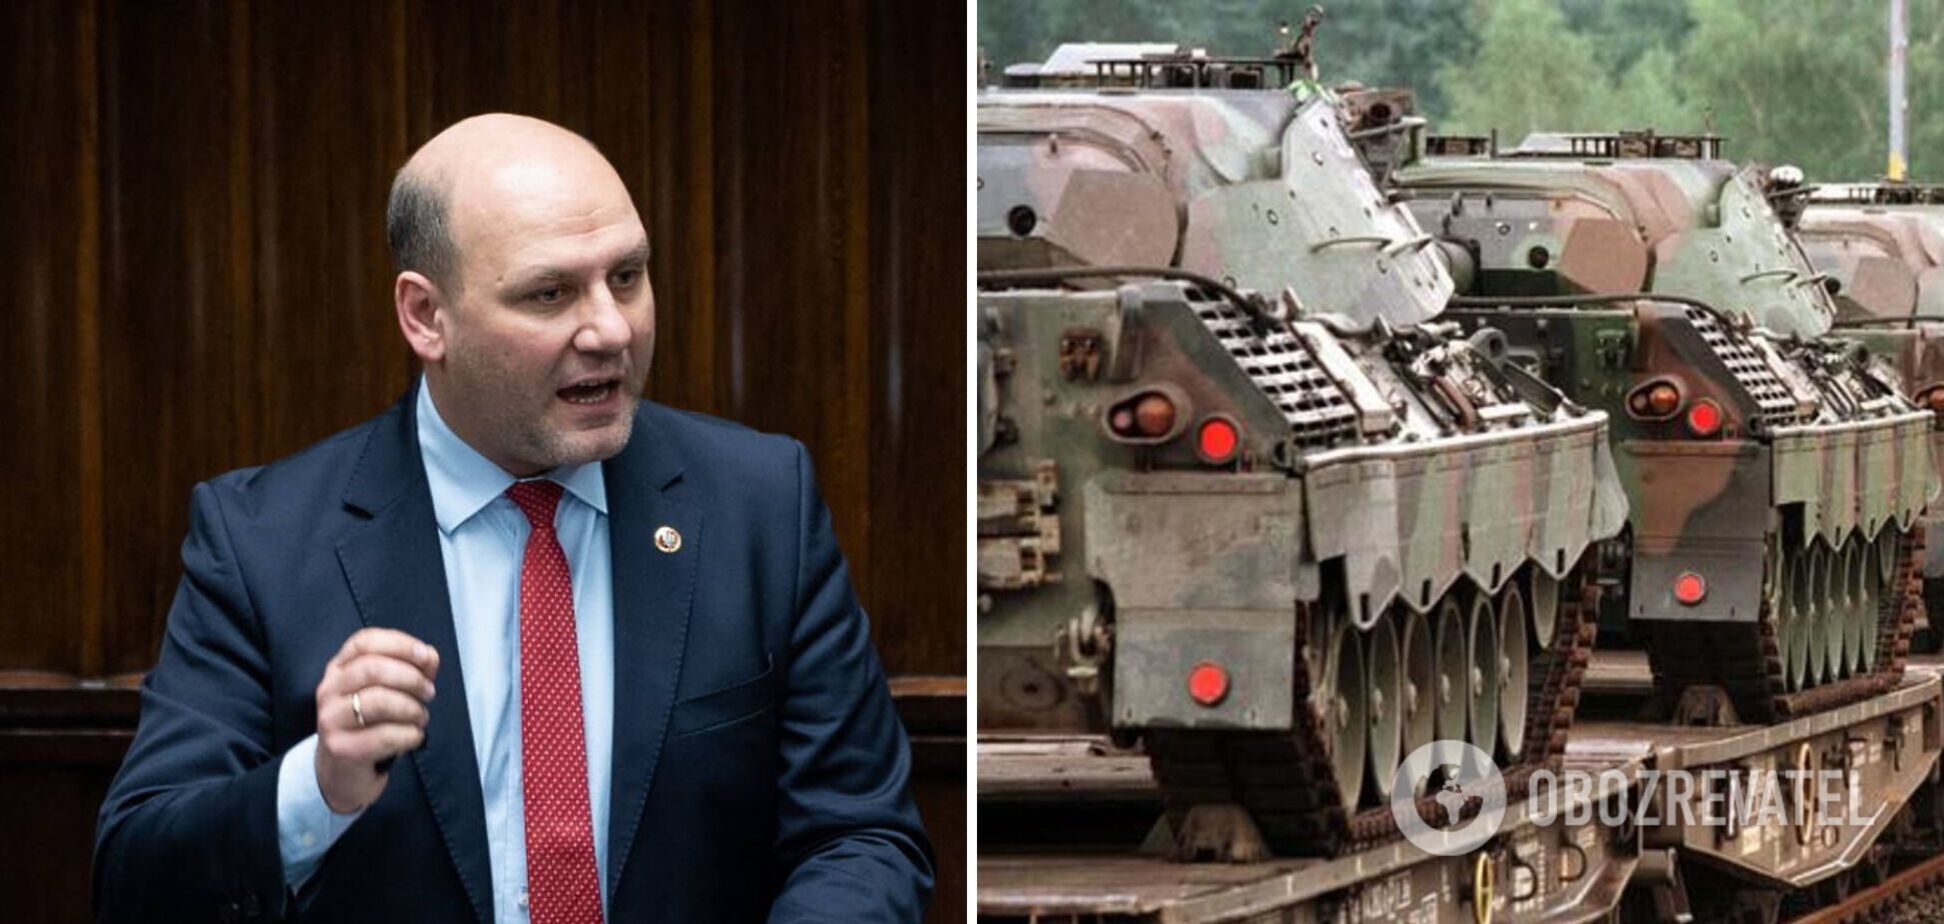 Германия хотела дать Польше танки старее чем те, которые отправили Украине